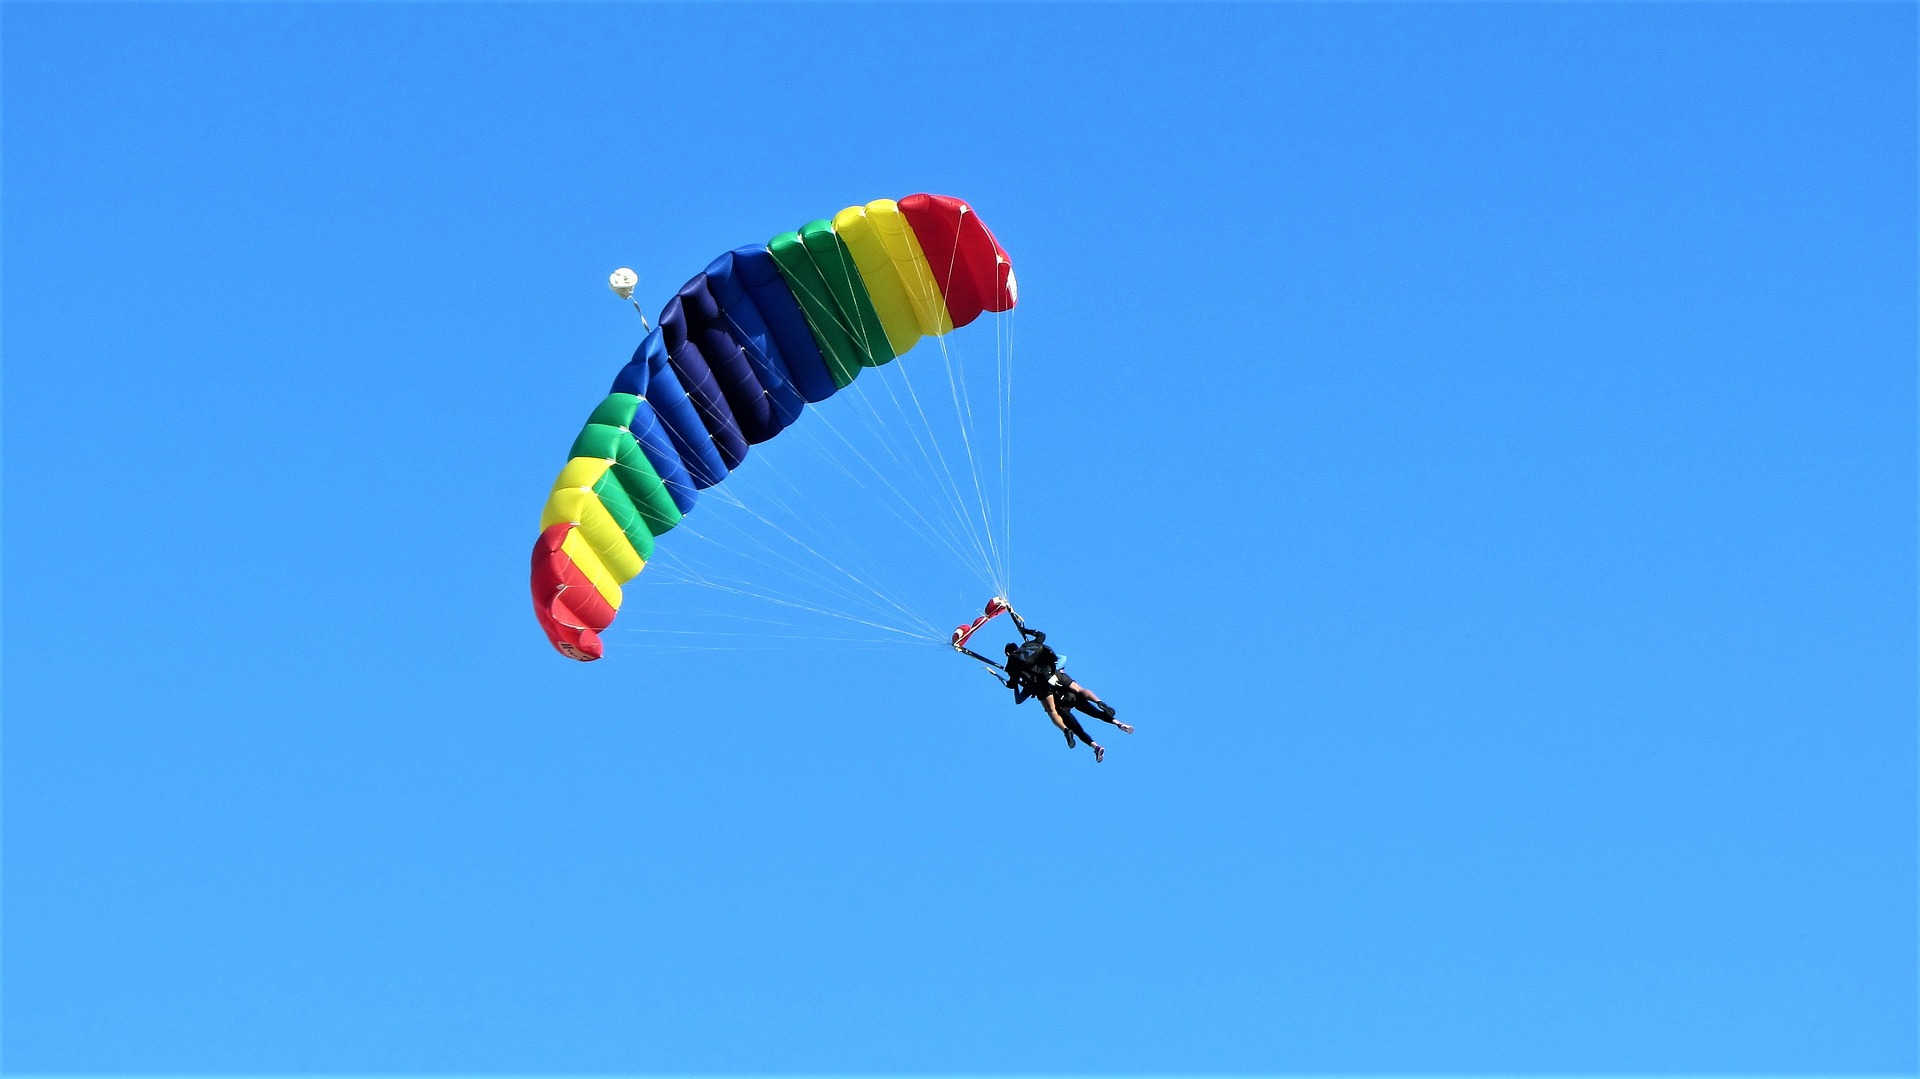 Auf diesem Bild ist ein Tandem-Fallschirmsprung zu sehen. Zwei Personen schweben an einem bunt gestreiften Fallschirm dem Erdboden entgegen.